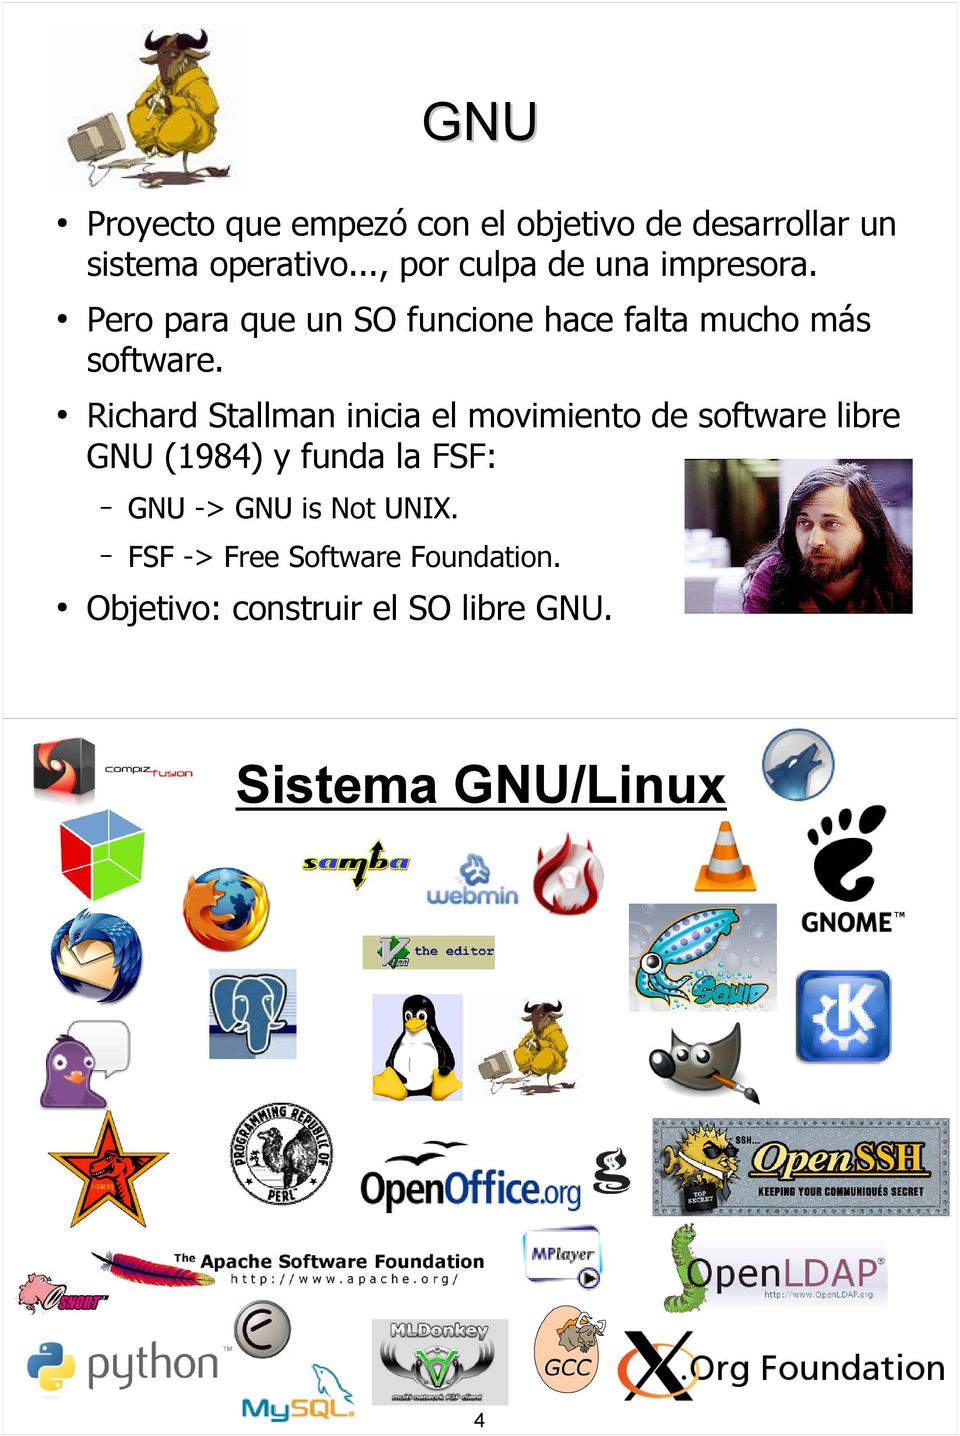 Richard Stallman inicia el movimiento de software libre GNU (1984) y funda la FSF: GNU ->